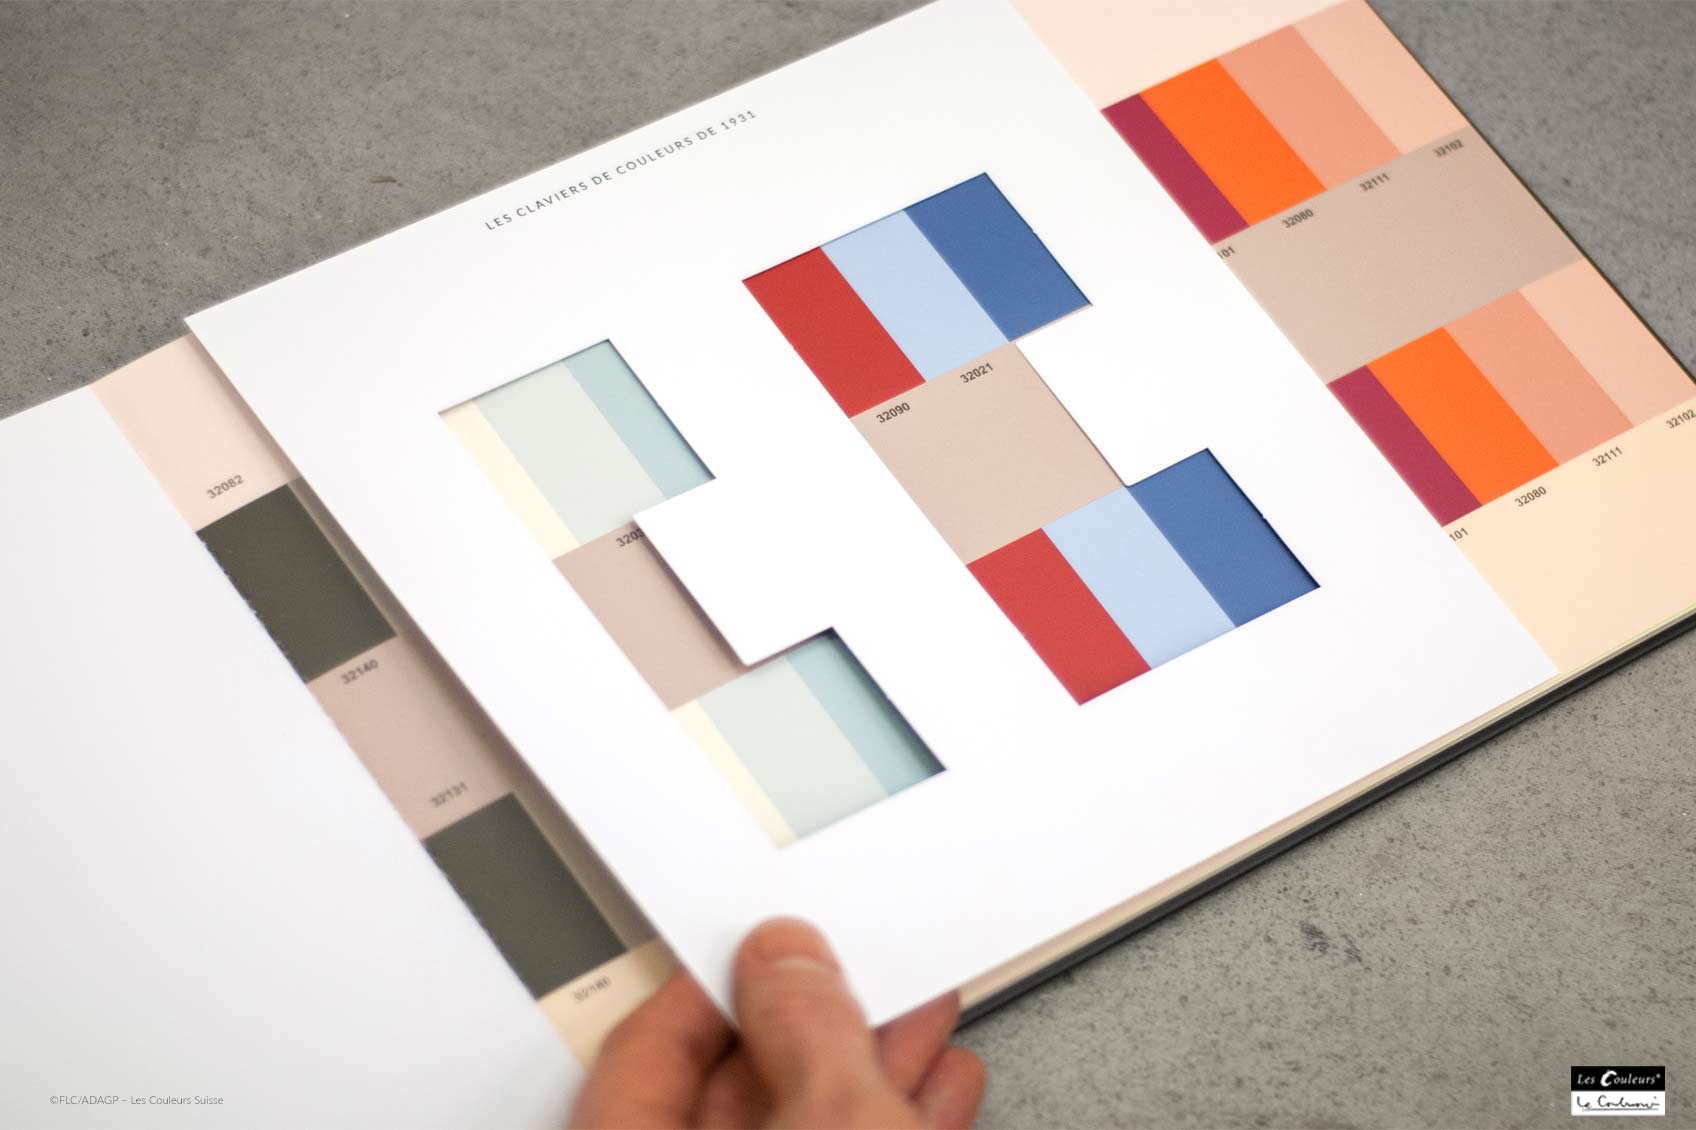 Le Corbusier claviers de couleurs design ©FLC/ADAGP – Les Couleurs Suisse